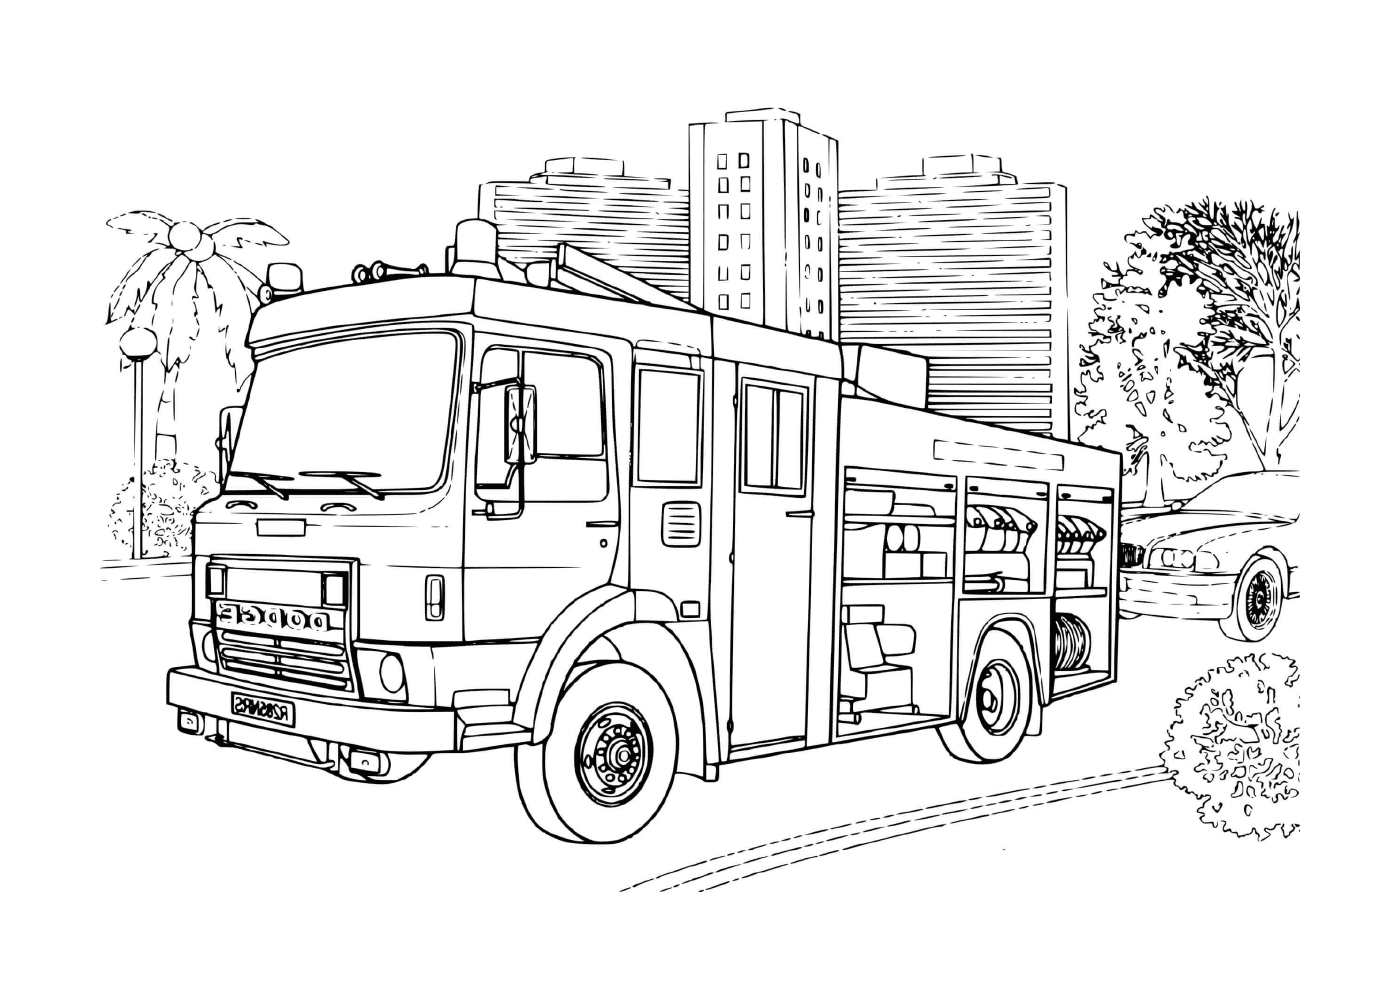  un camión de fuego de la marca Dodge 